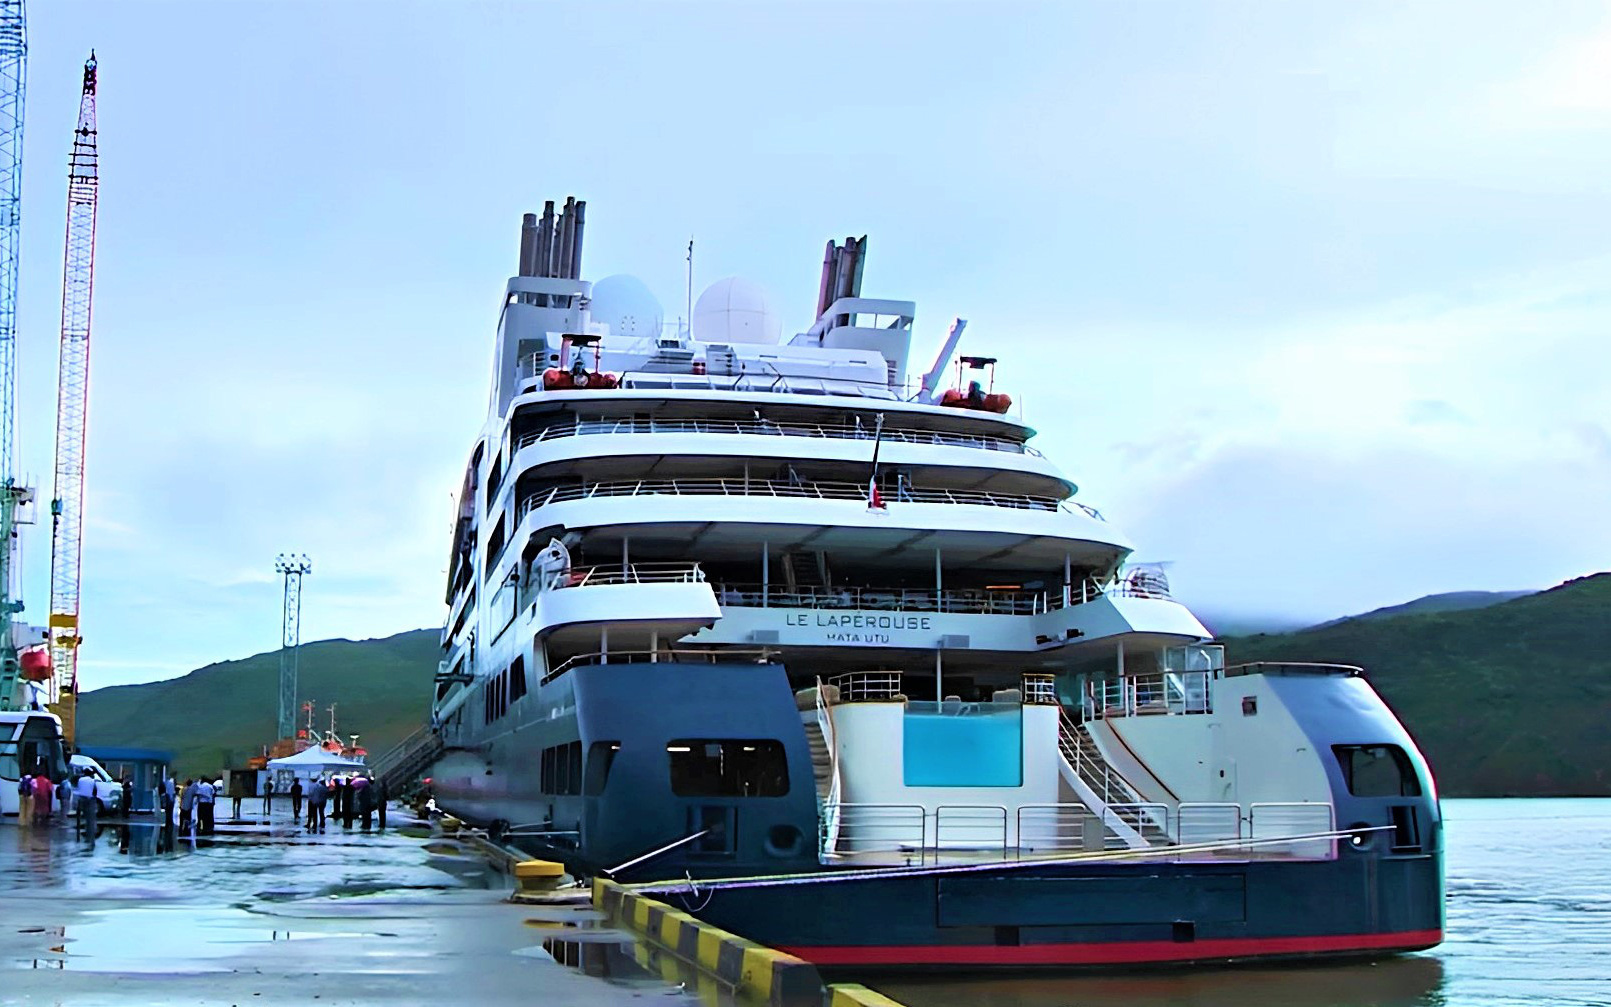 Tàu du lịch biển đến Nha Trang phải hủy chuyến vì vướng quy định